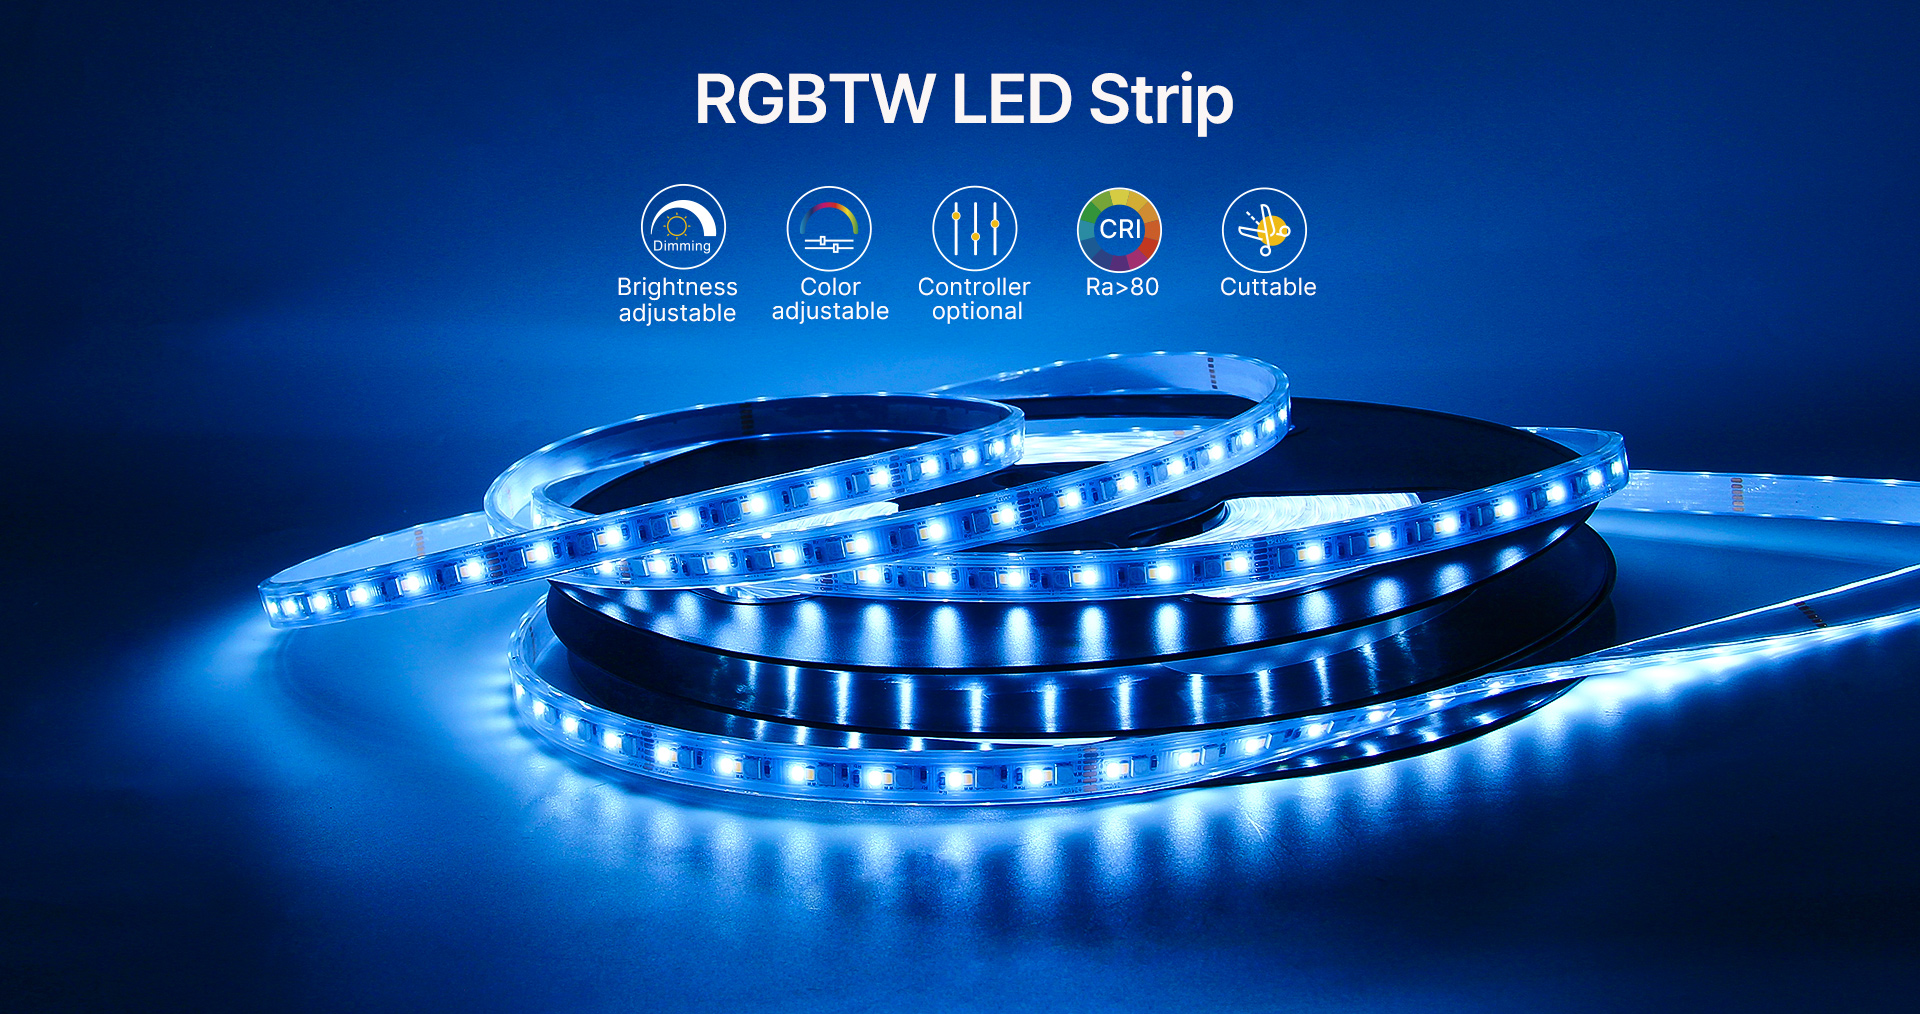 RGBTW LED Strip